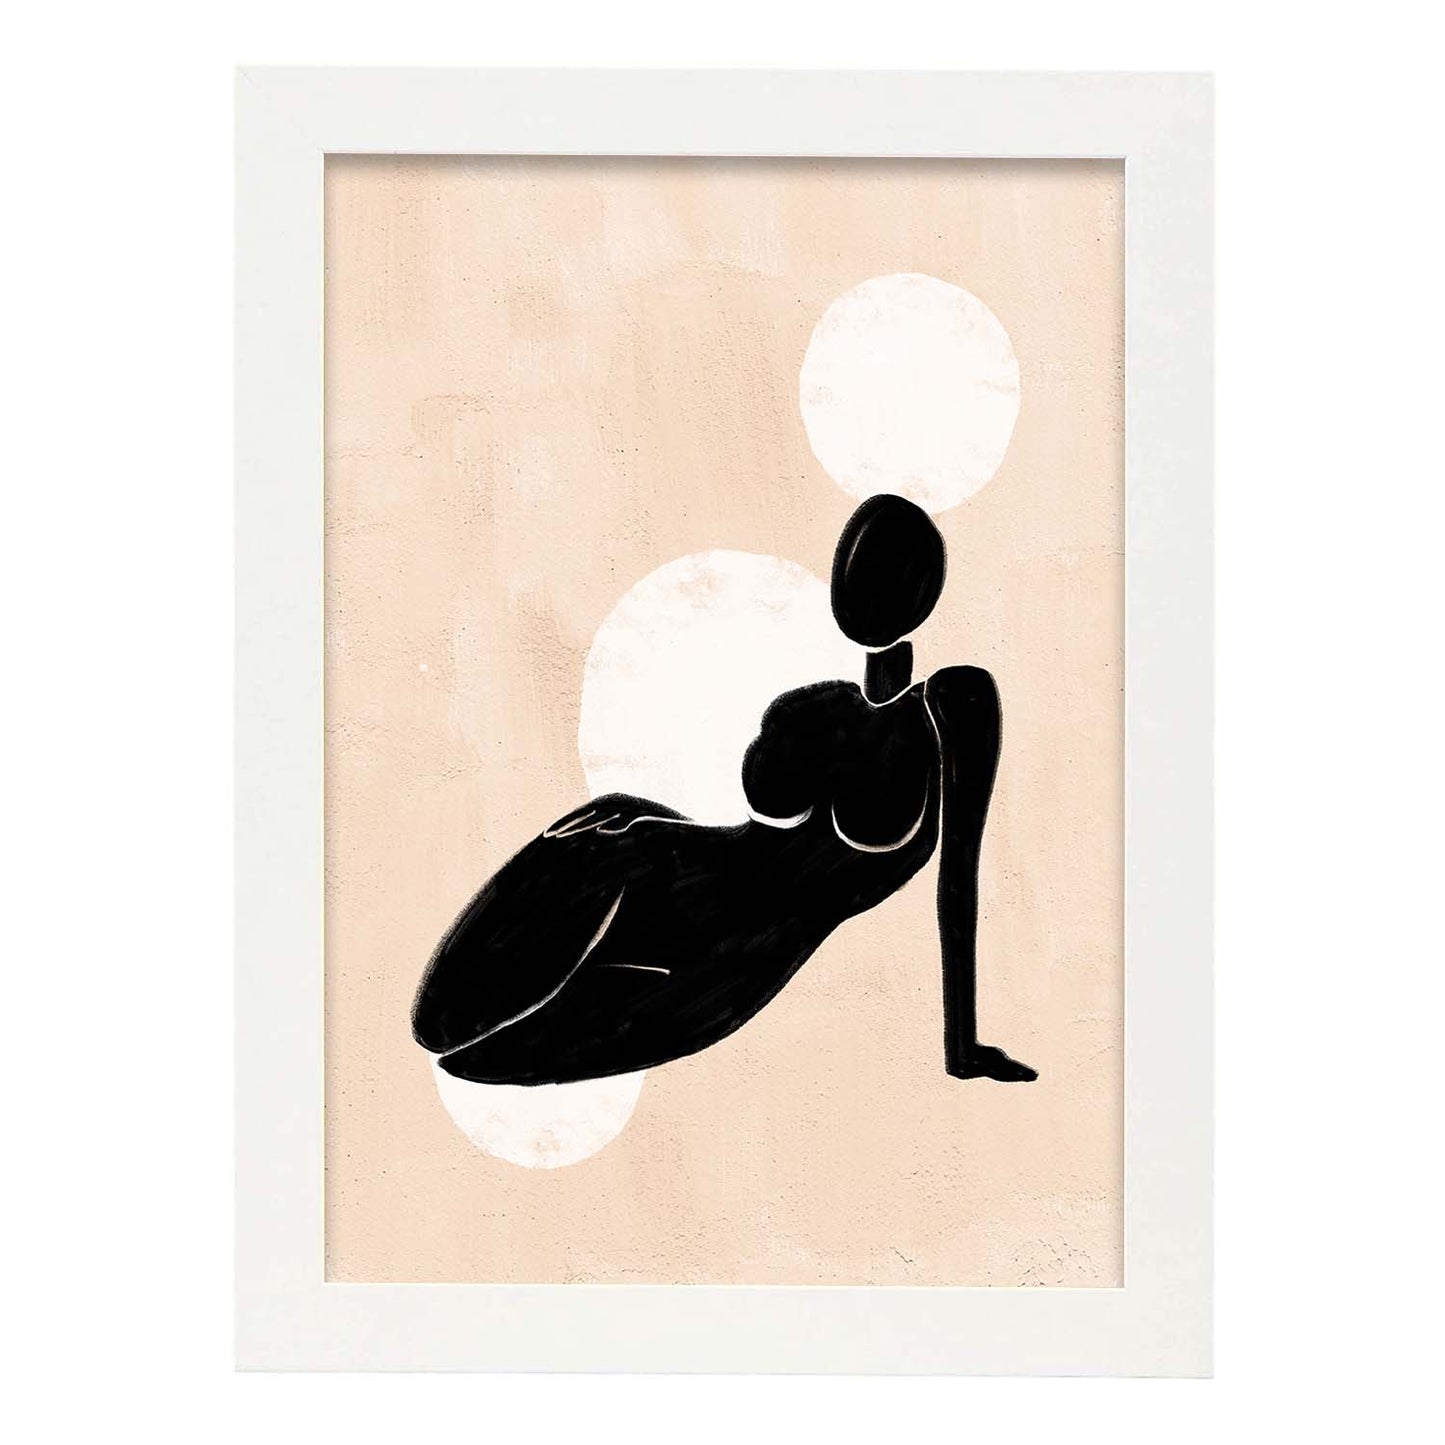 Poster con ilustracion de mujer. Dibujos con formas, caras, cuerpos y gestos de mujeres. 'Mujeres 8'.-Artwork-Nacnic-A4-Marco Blanco-Nacnic Estudio SL